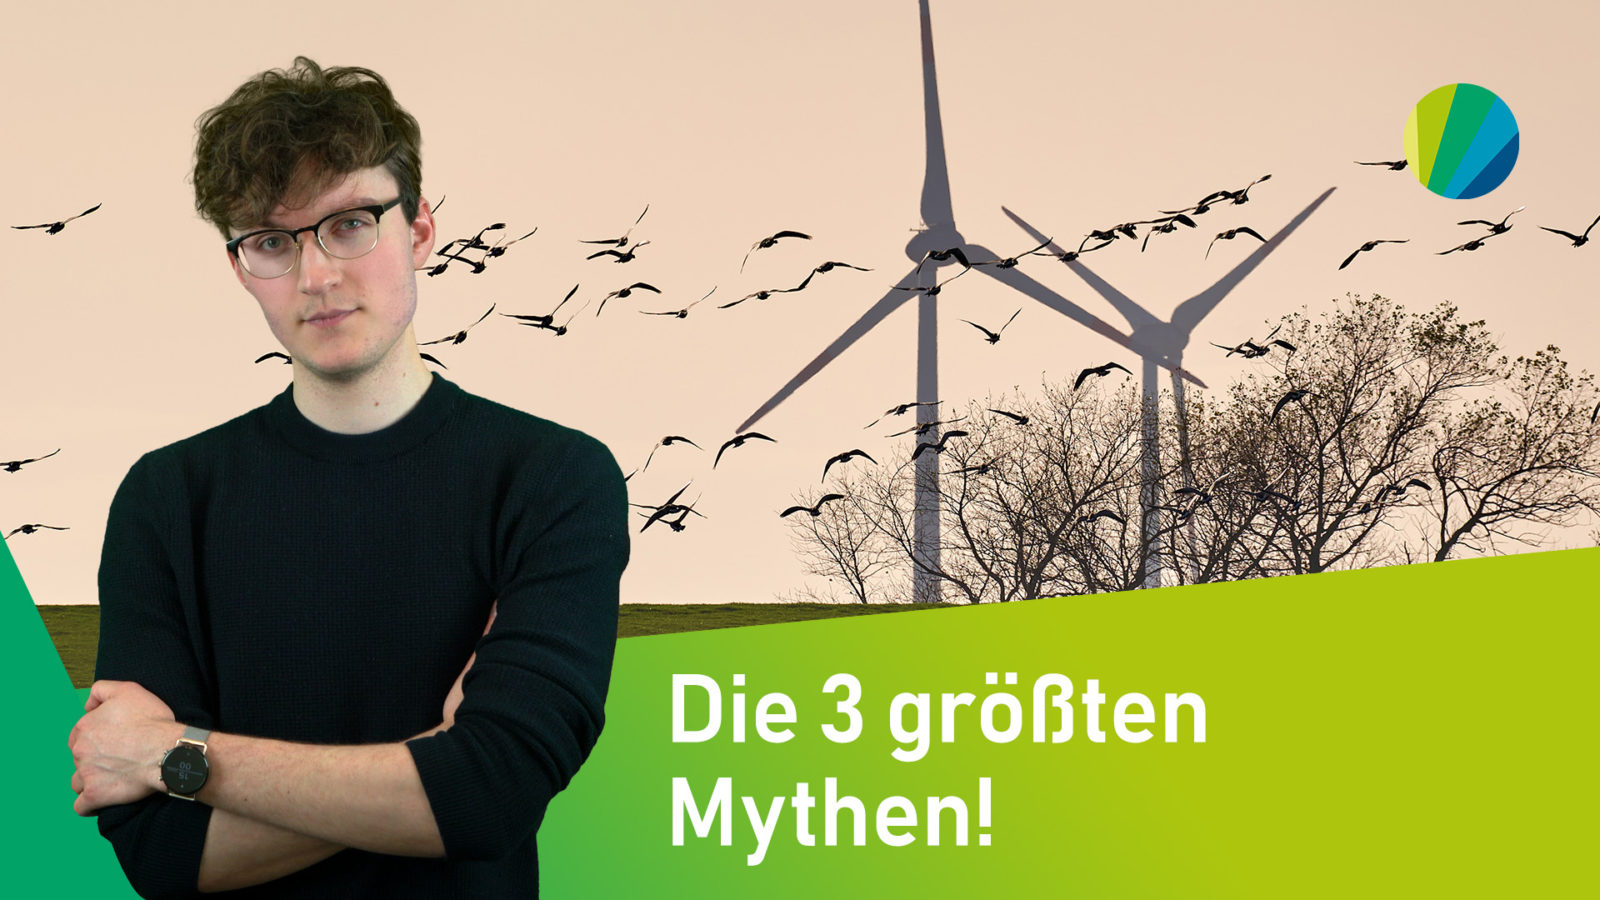 Standbild aus Video: junger Moderator vor Bild von Landschaft mit Windräder und vorbeiziehendem Vogelschwarm mit Titel: Die 3 größten Mythen!